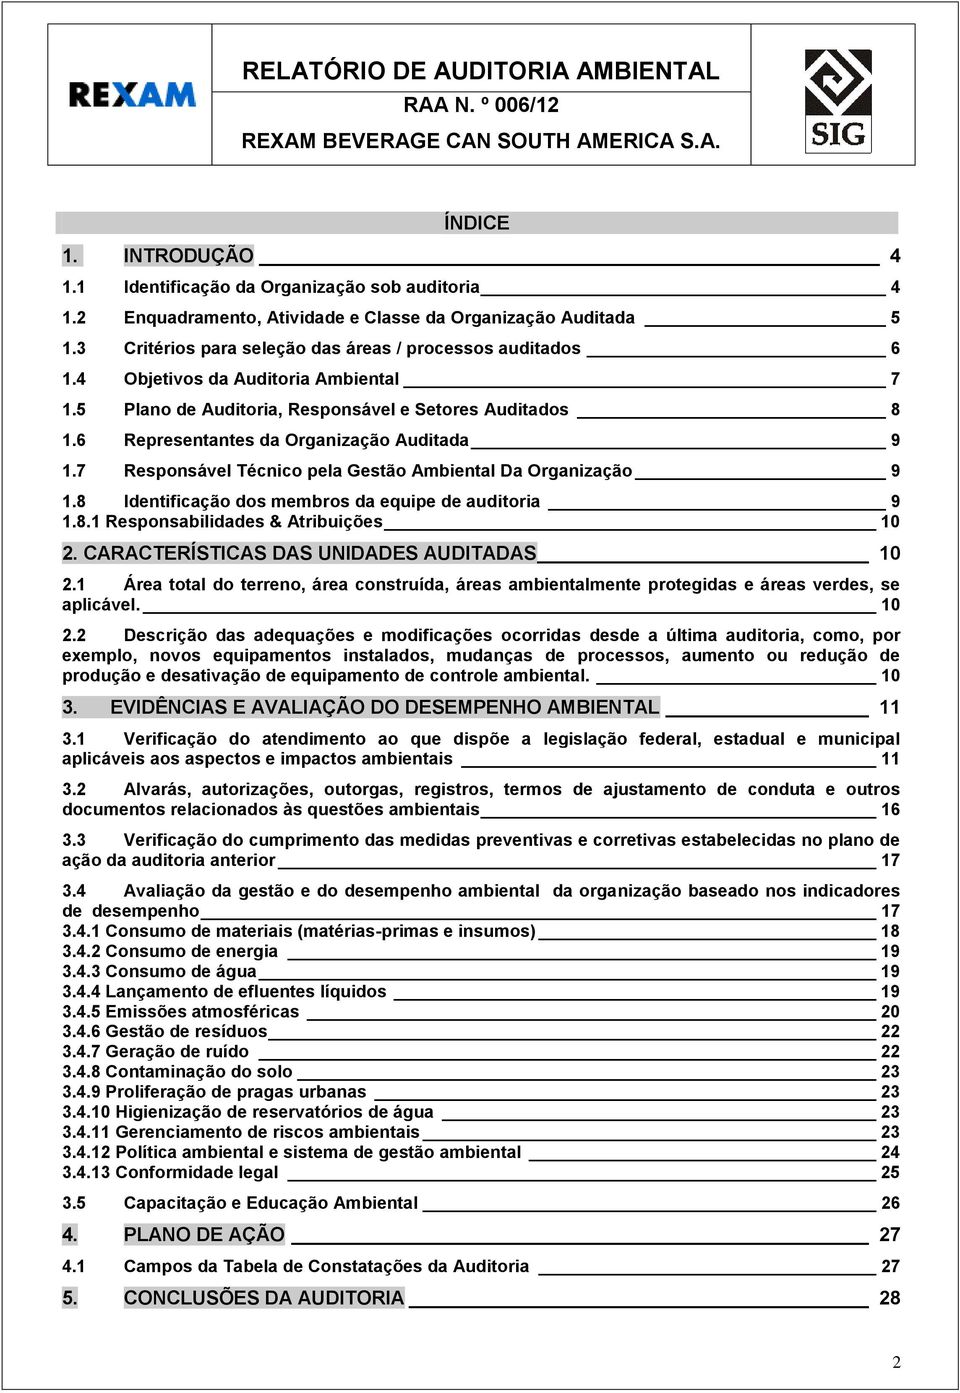 RELATÓRIO DE AUDITORIA AMBIENTAL DE ACOMPANHAMENTO - PDF Free Download